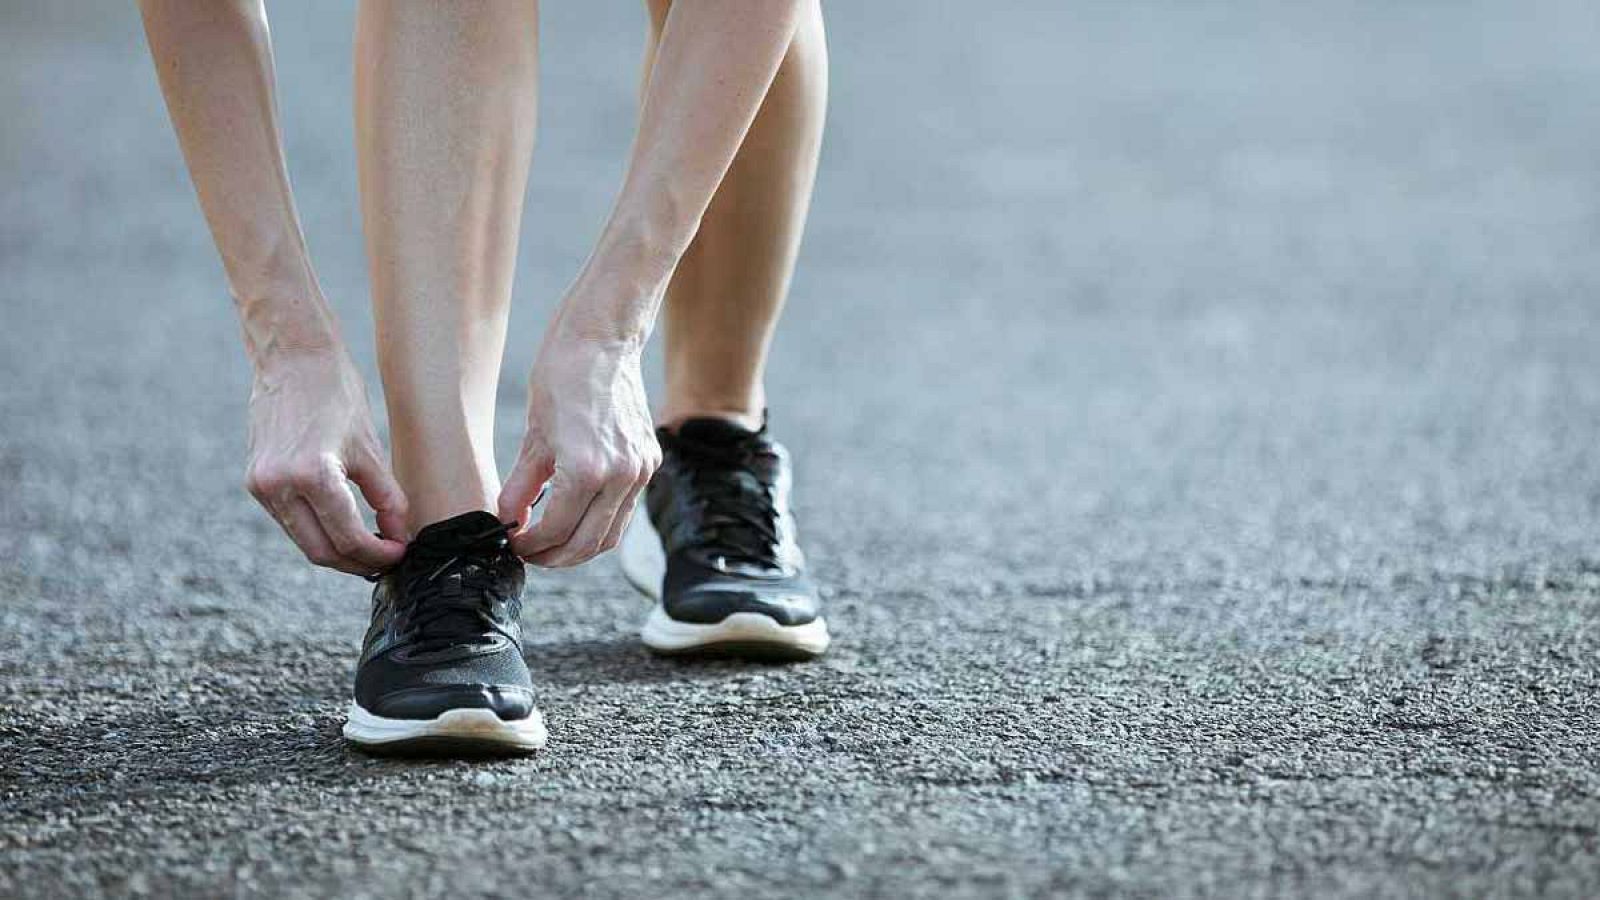 El ejercicio de alta intensidad aeróbico, como correr o montar en bici, ayuda a las células a detener el proceso de envejecimiento.